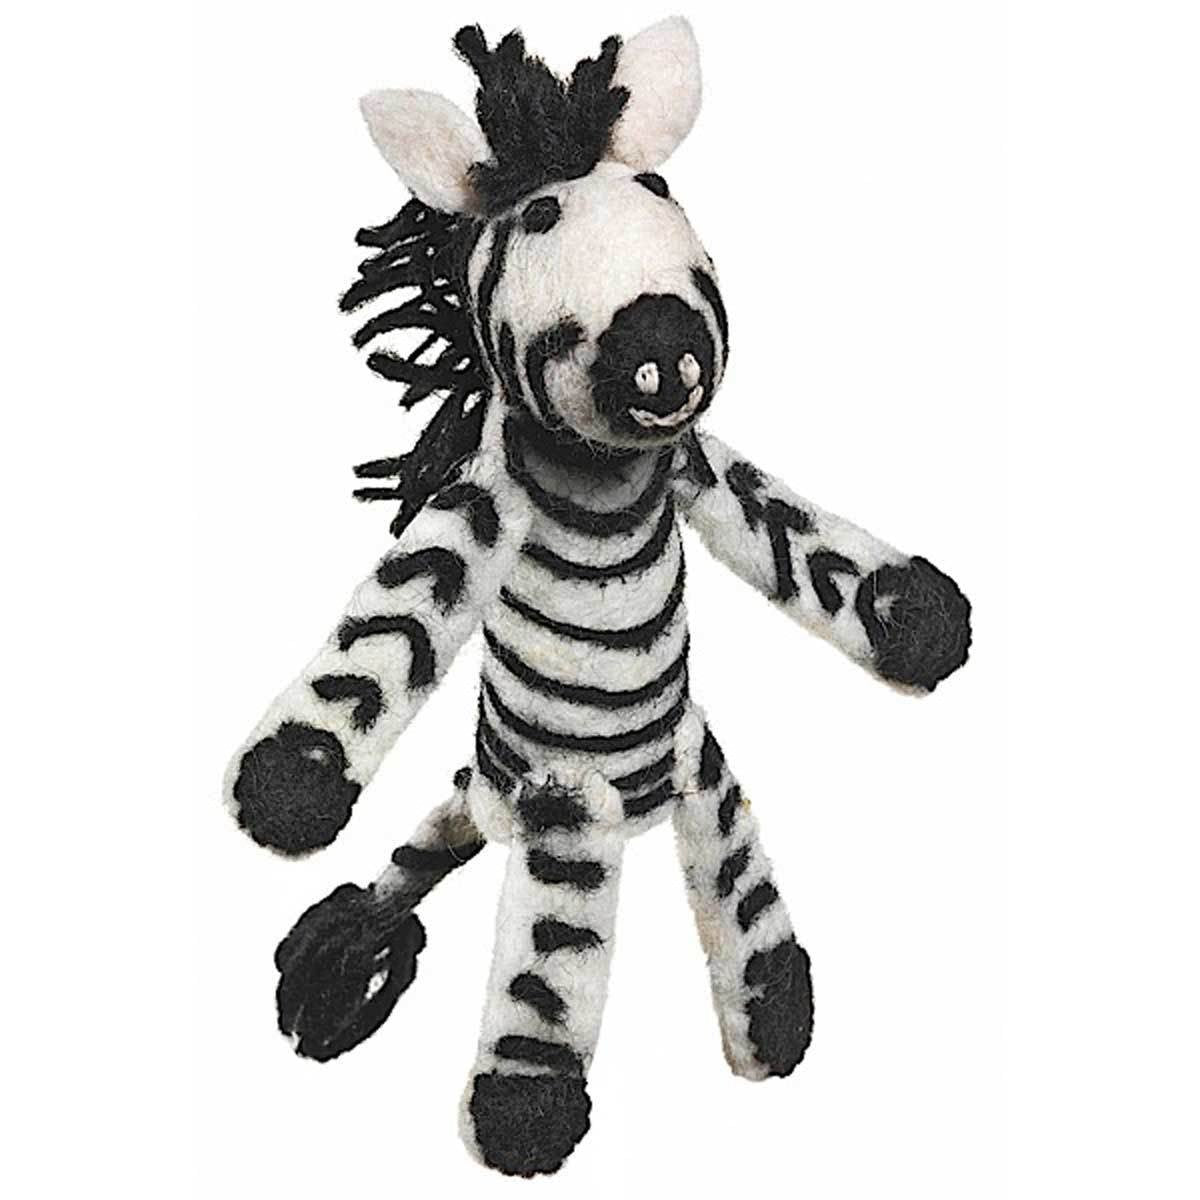 Wild Woolies Zebra Woolie Finger Puppet
Jungle Pillows